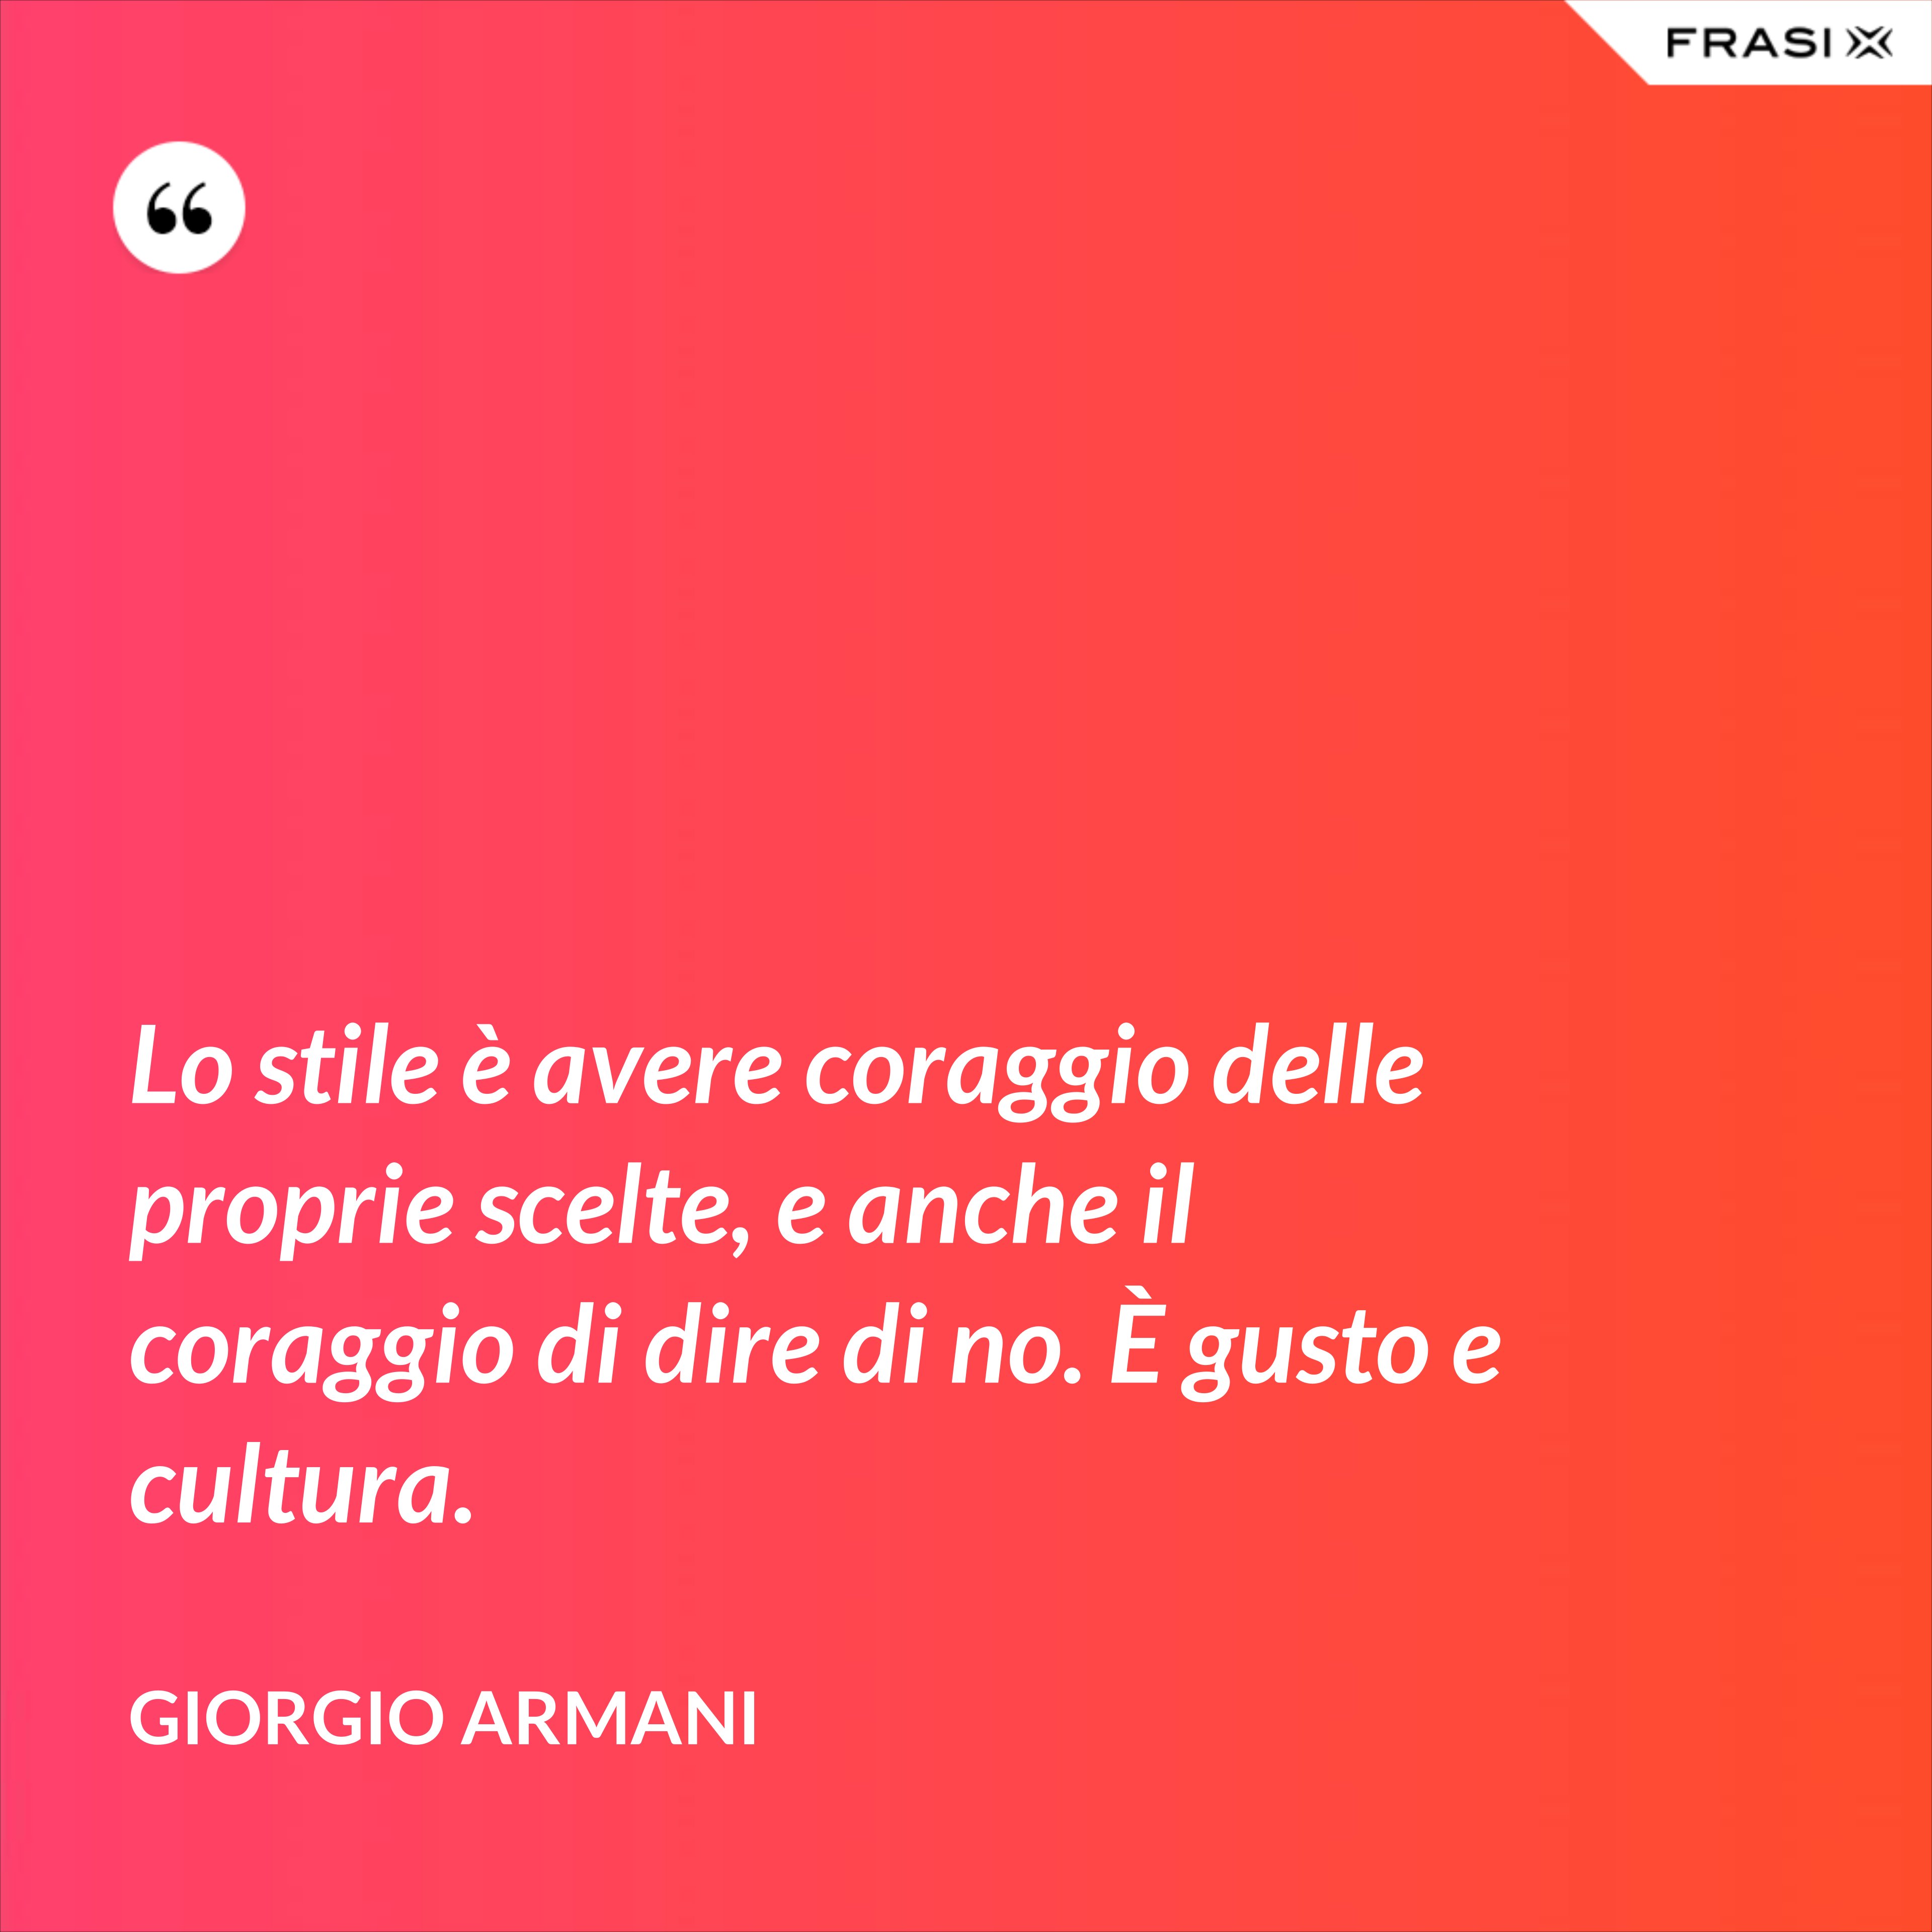 Lo stile è avere coraggio delle proprie scelte, e anche il coraggio di dire di no. È gusto e cultura. - Giorgio Armani